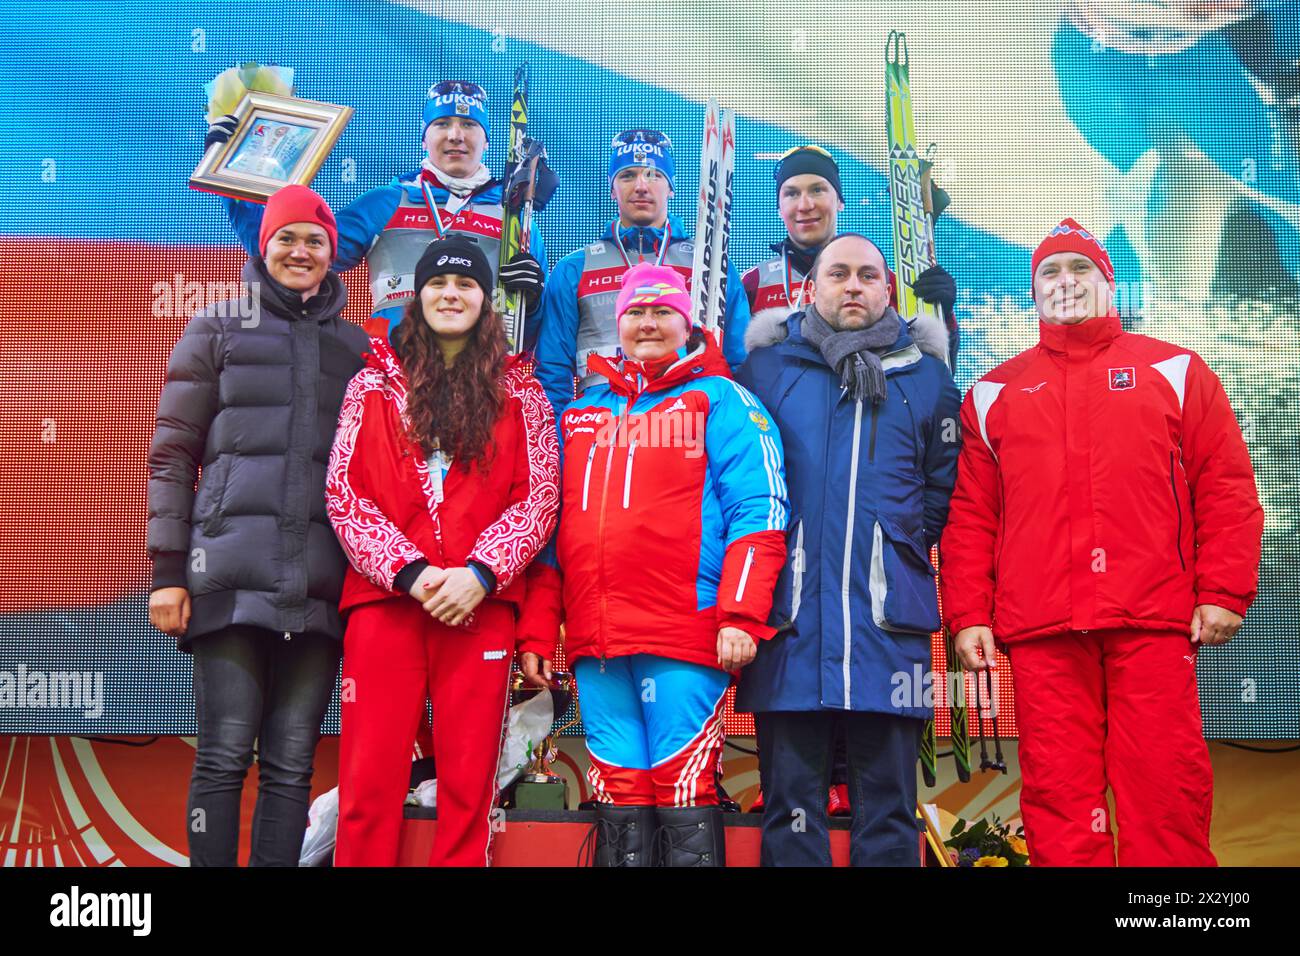 MOSCOU - 9 février : vainqueurs de la Coupe continentale FIS course de ski dans la catégorie ville-événement, 9 février 2013, Moscou, Russie. La piste est construite le long de cent Banque D'Images